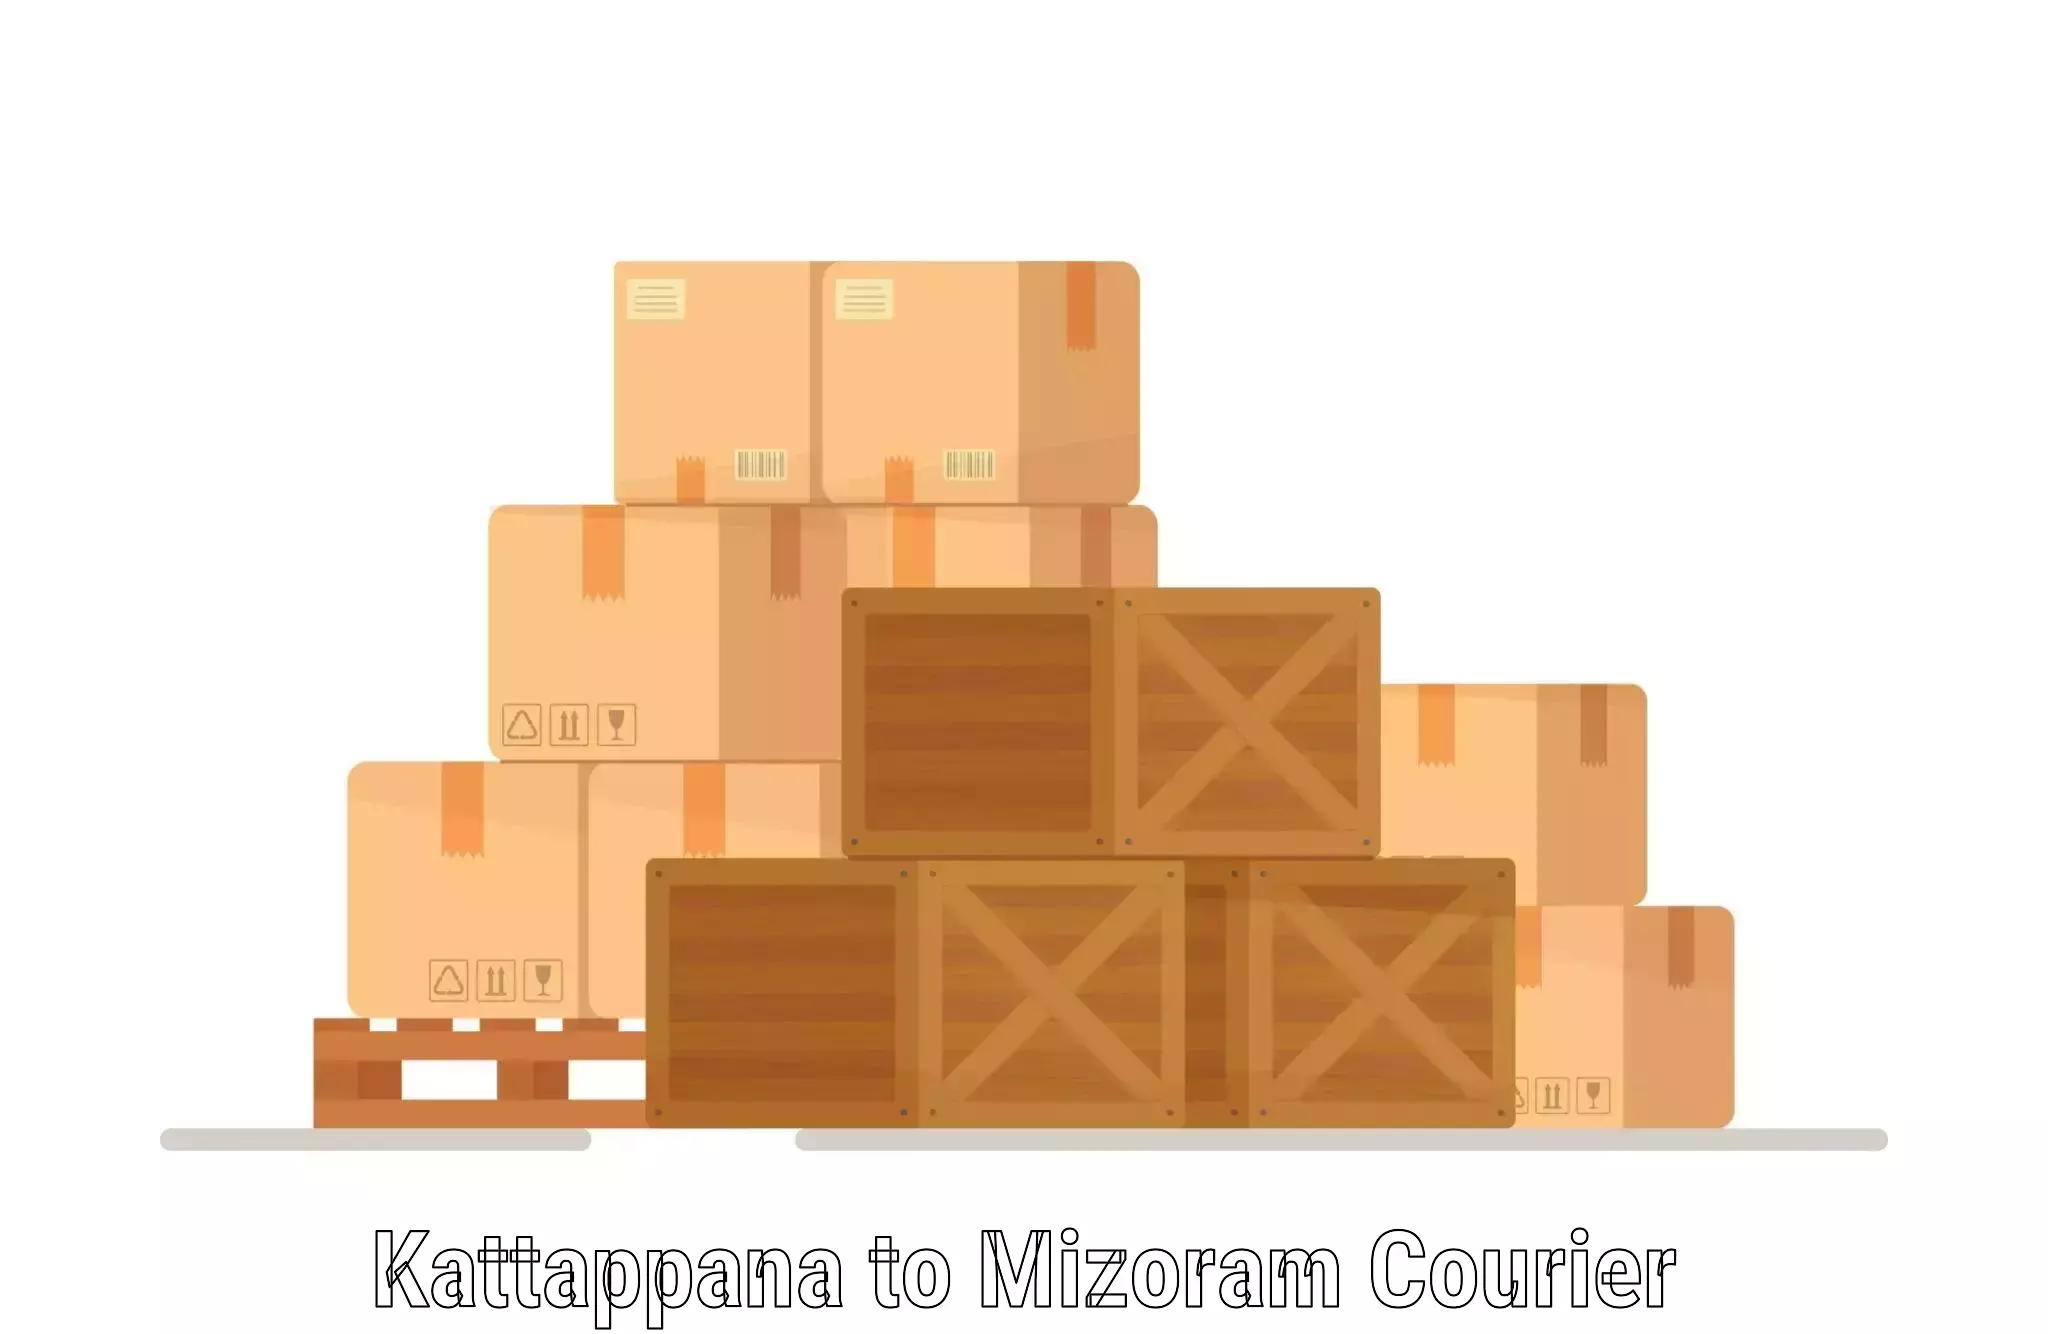 Courier service comparison Kattappana to Darlawn